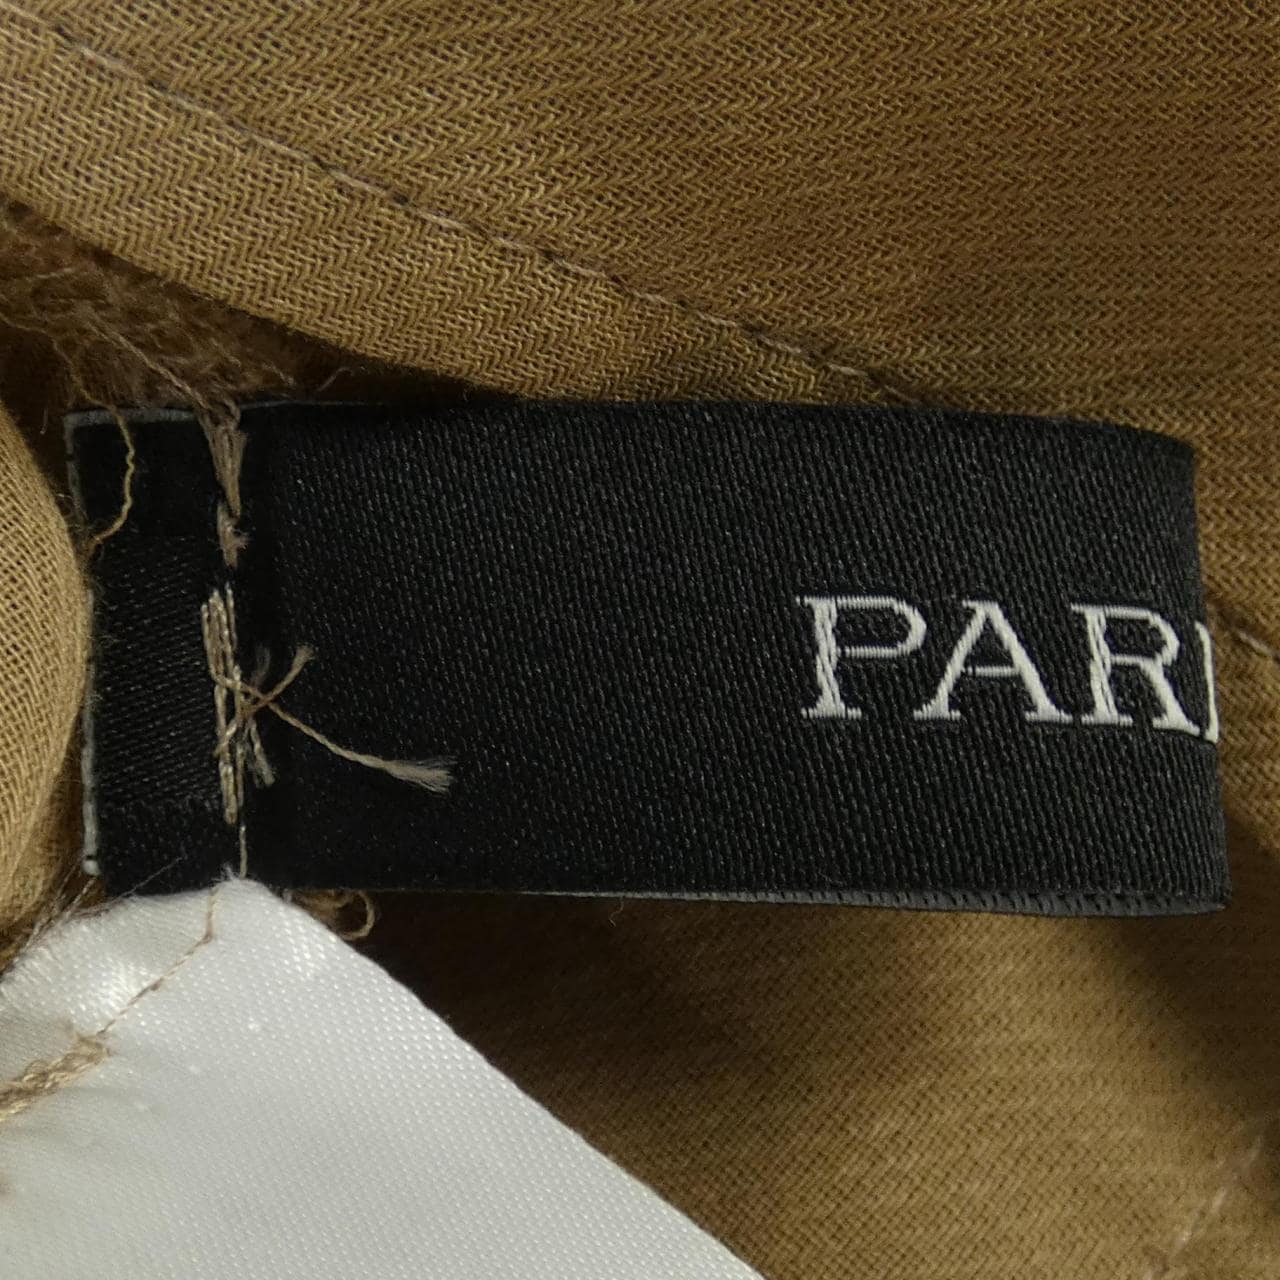 PARIGOT jacket